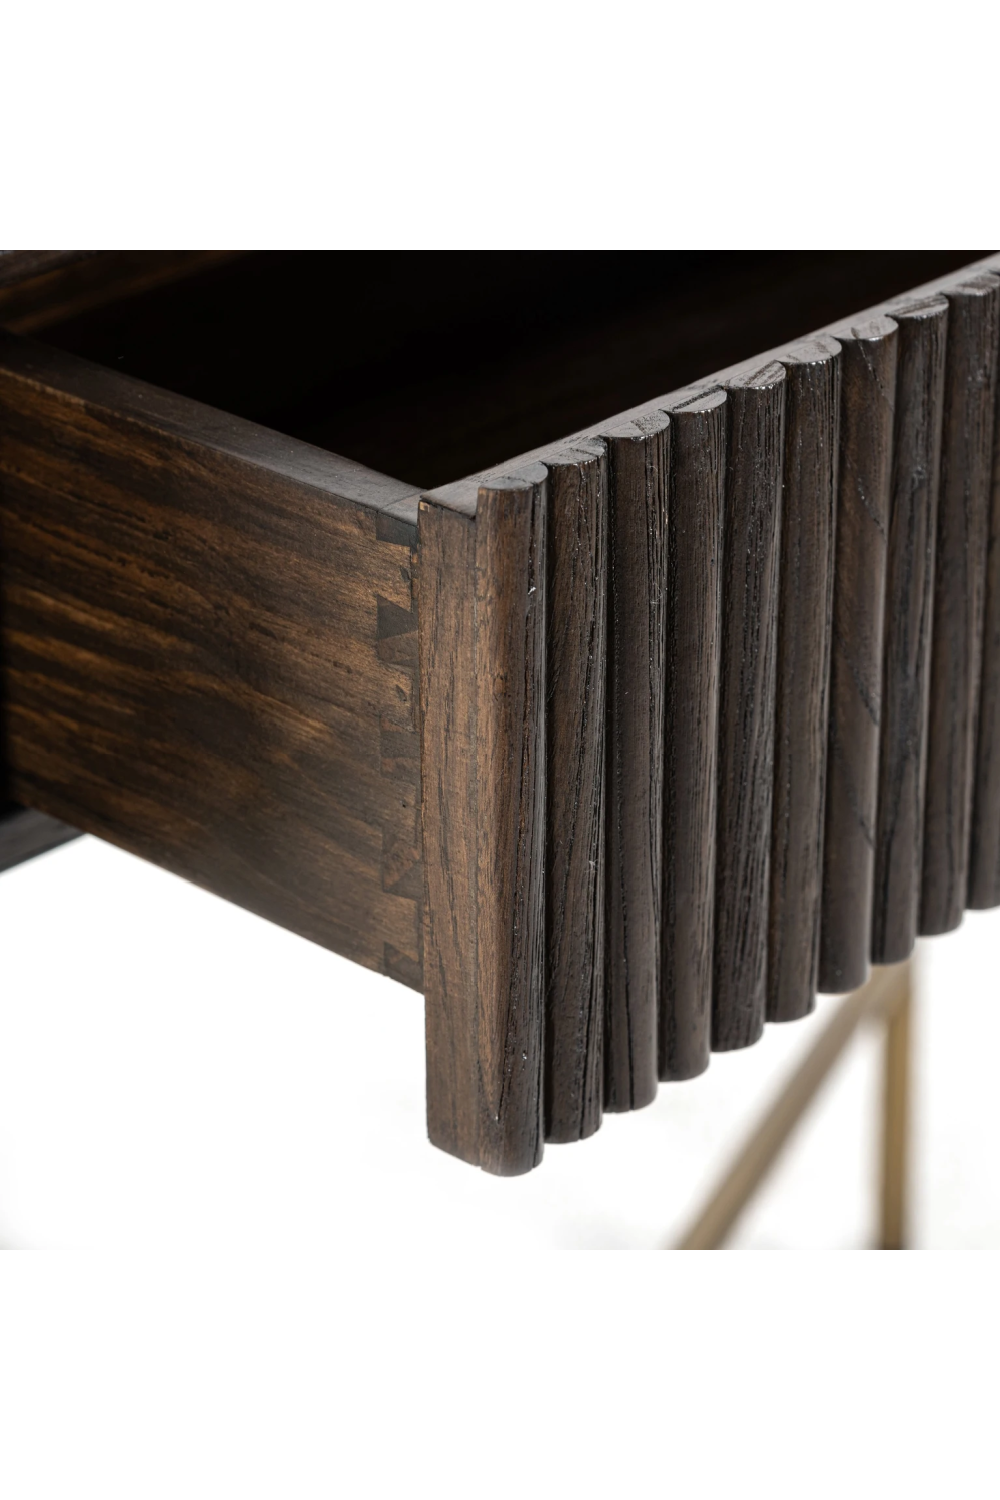 1-Drawer Oak Console Table | OROA Luxor | Oroa.com